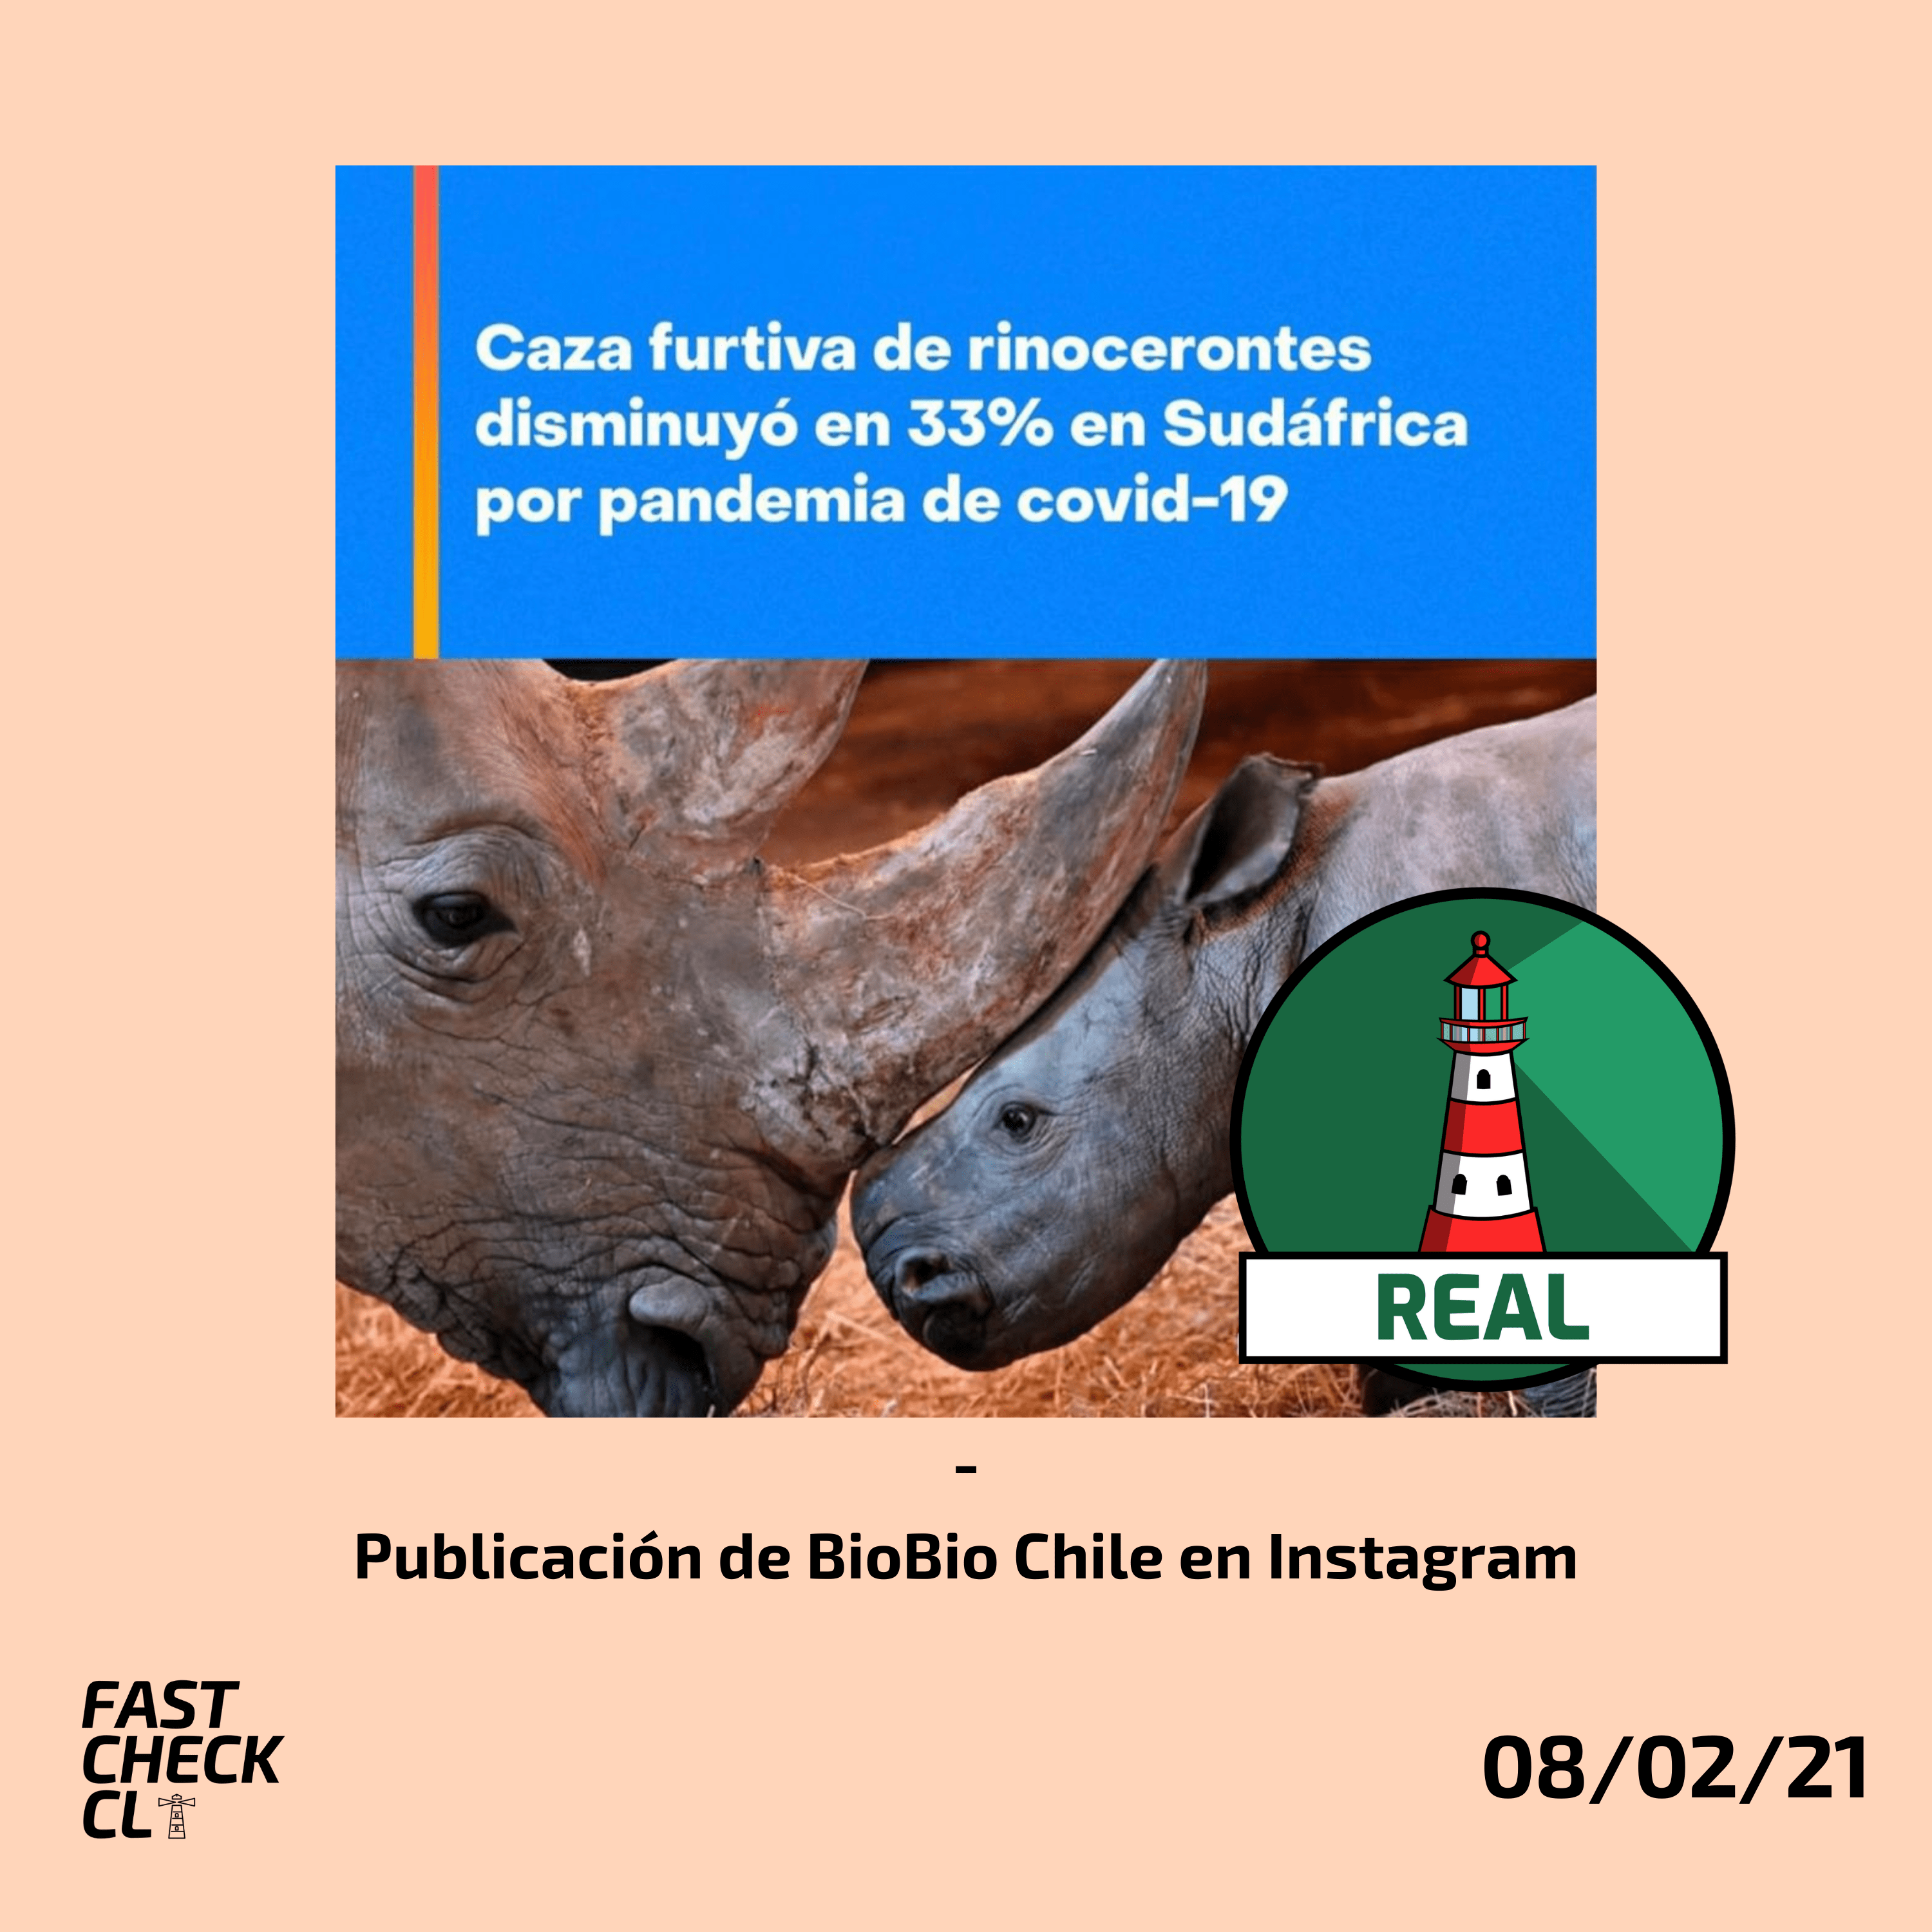 Read more about the article “Caza furtiva de rinocerontes disminuyó en 33% en Sudáfrica por pandemia de Covid-19”: #Real